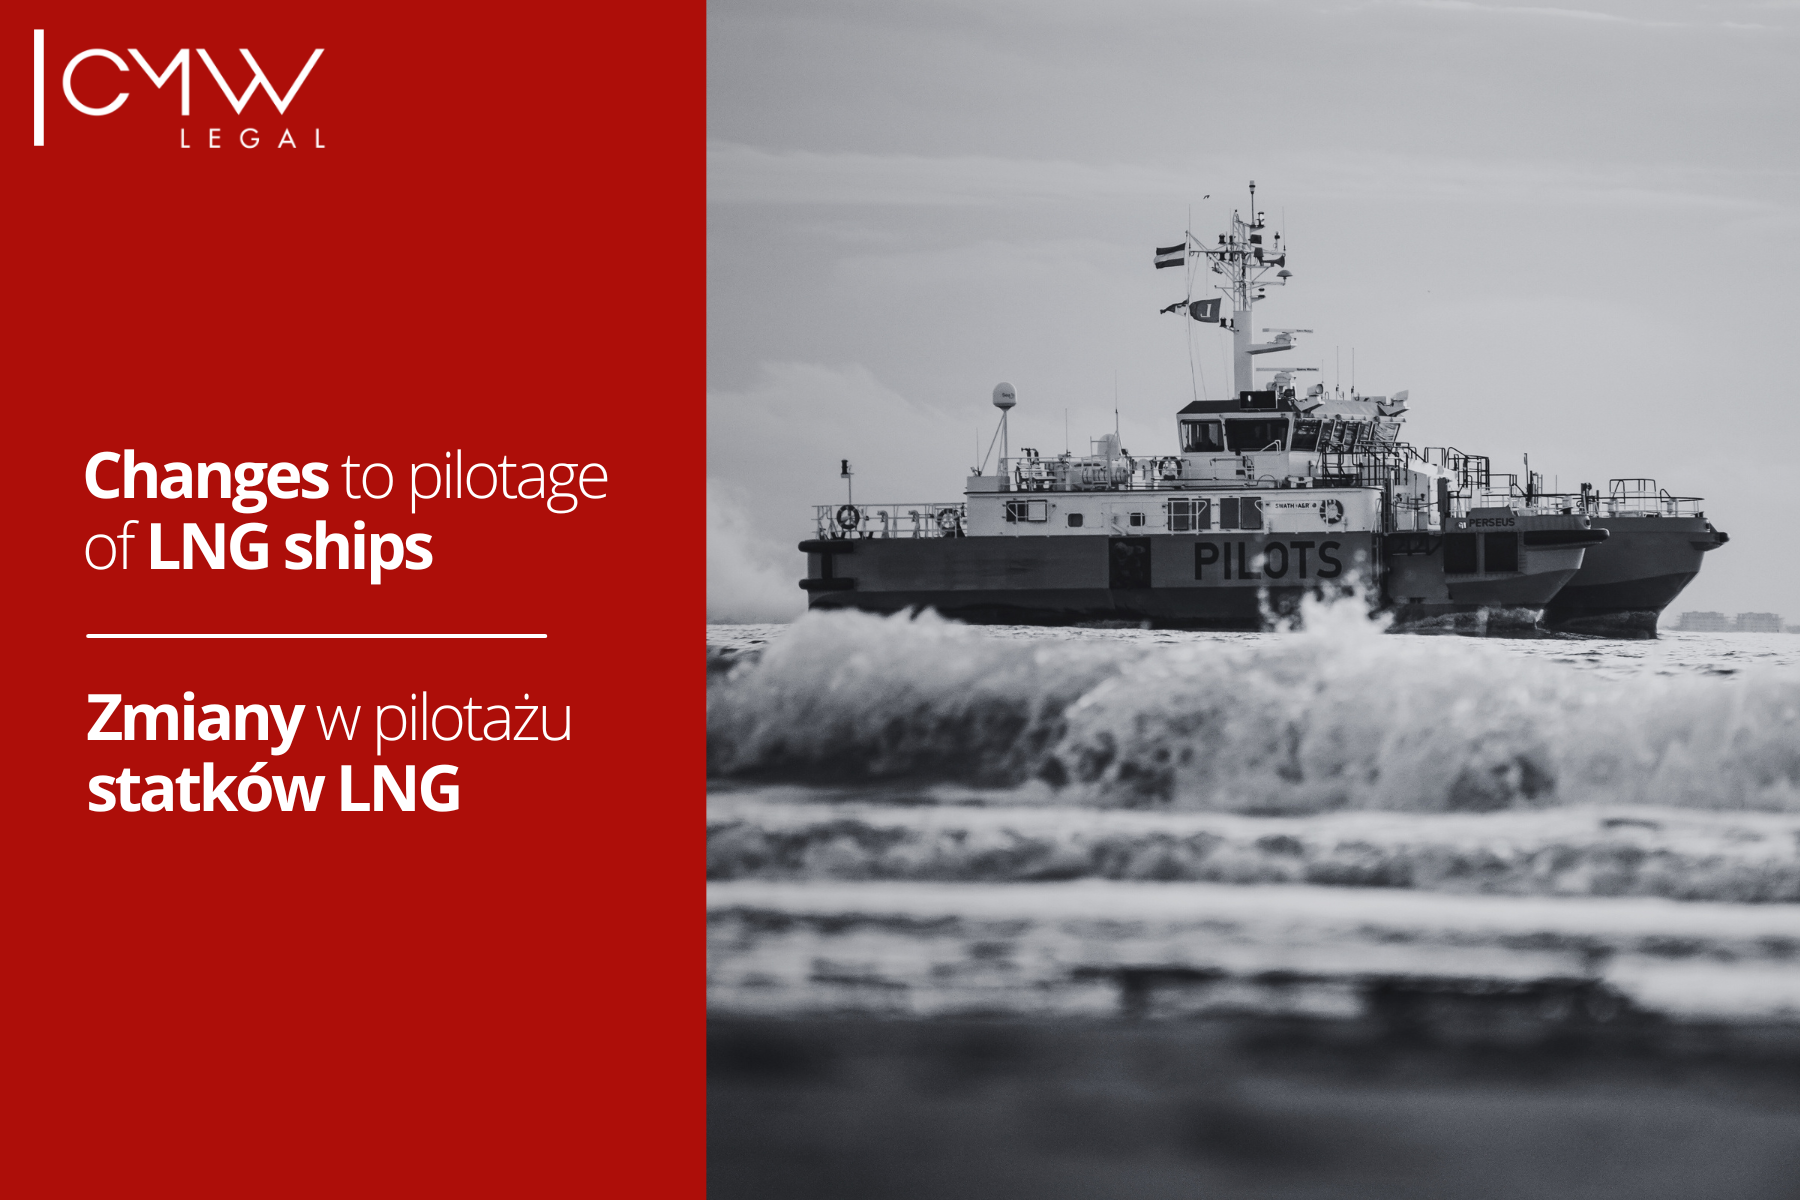  Wejście w życie zmiany przepisów o pilotażu morskim zbiornikowców LNG